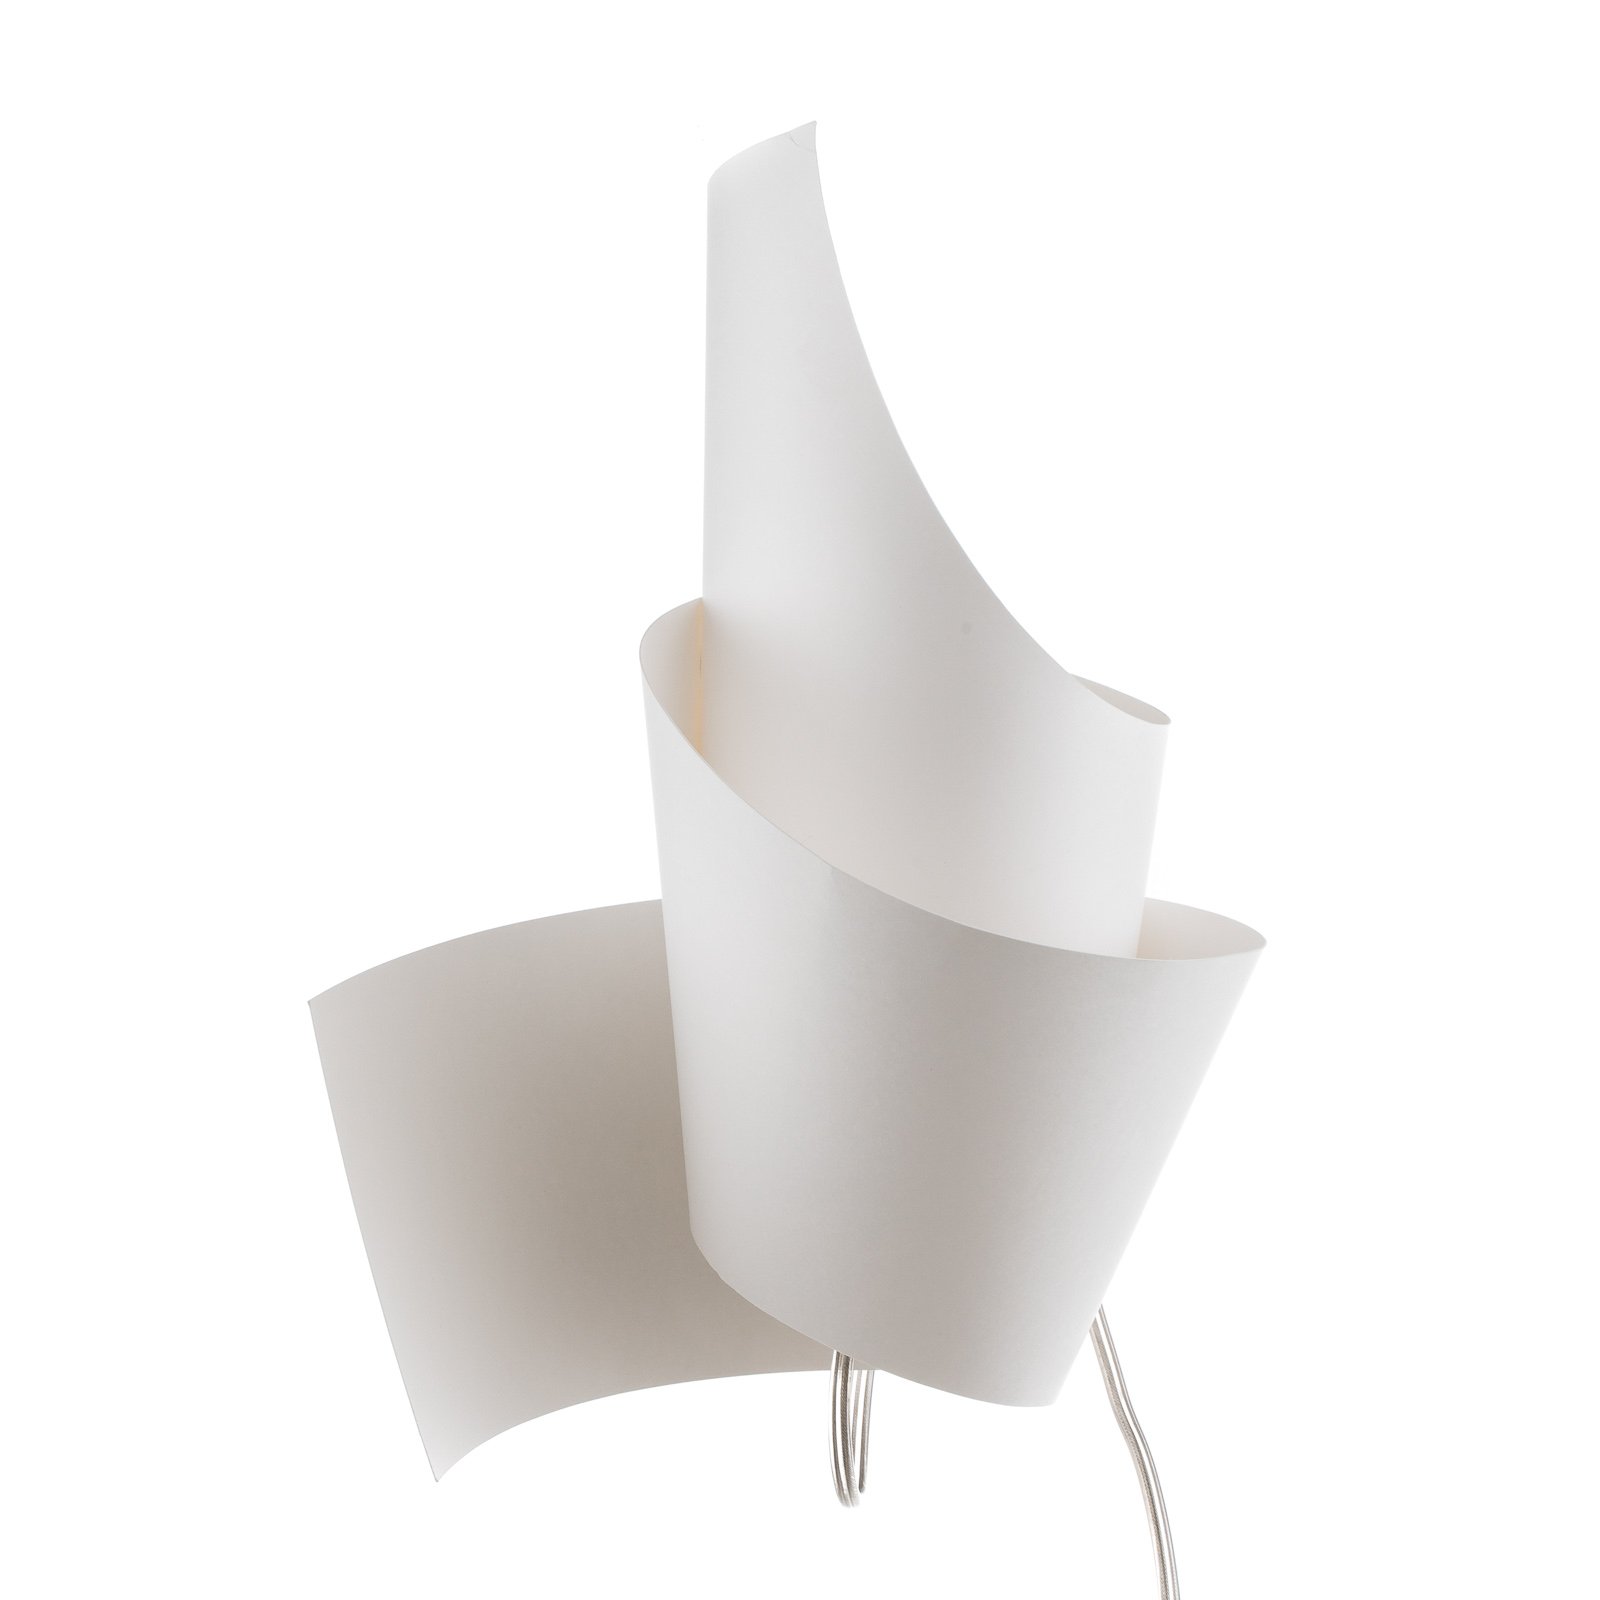 Ingo Maurer Oop's 2 wandlamp van papier